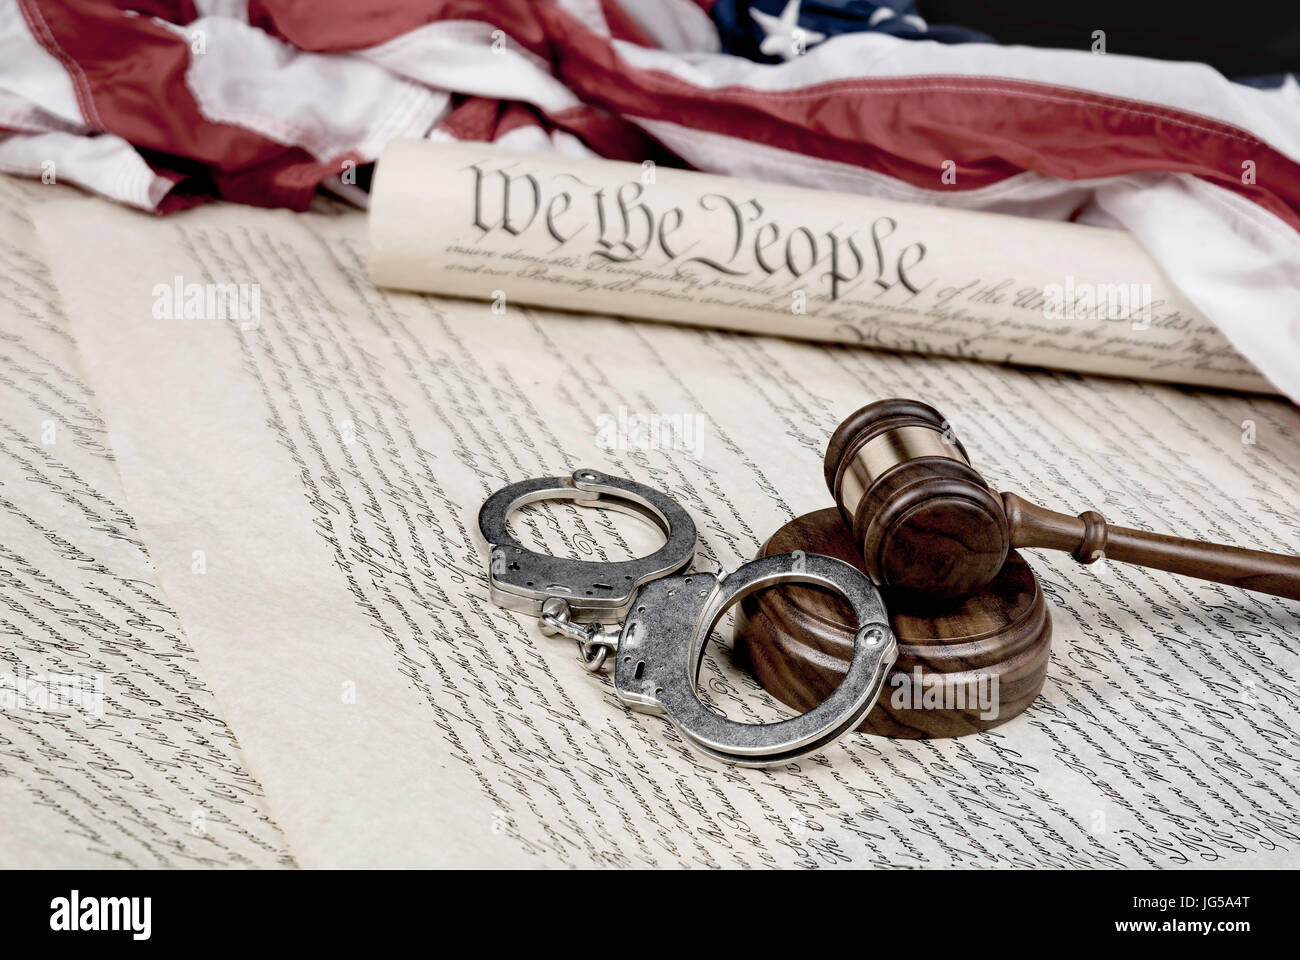 Verfassung der Vereinigten Staaten auf eine amerikanische Flagge mit einem Hammer und Handschellen im Vordergrund aufgerollt. Stockfoto